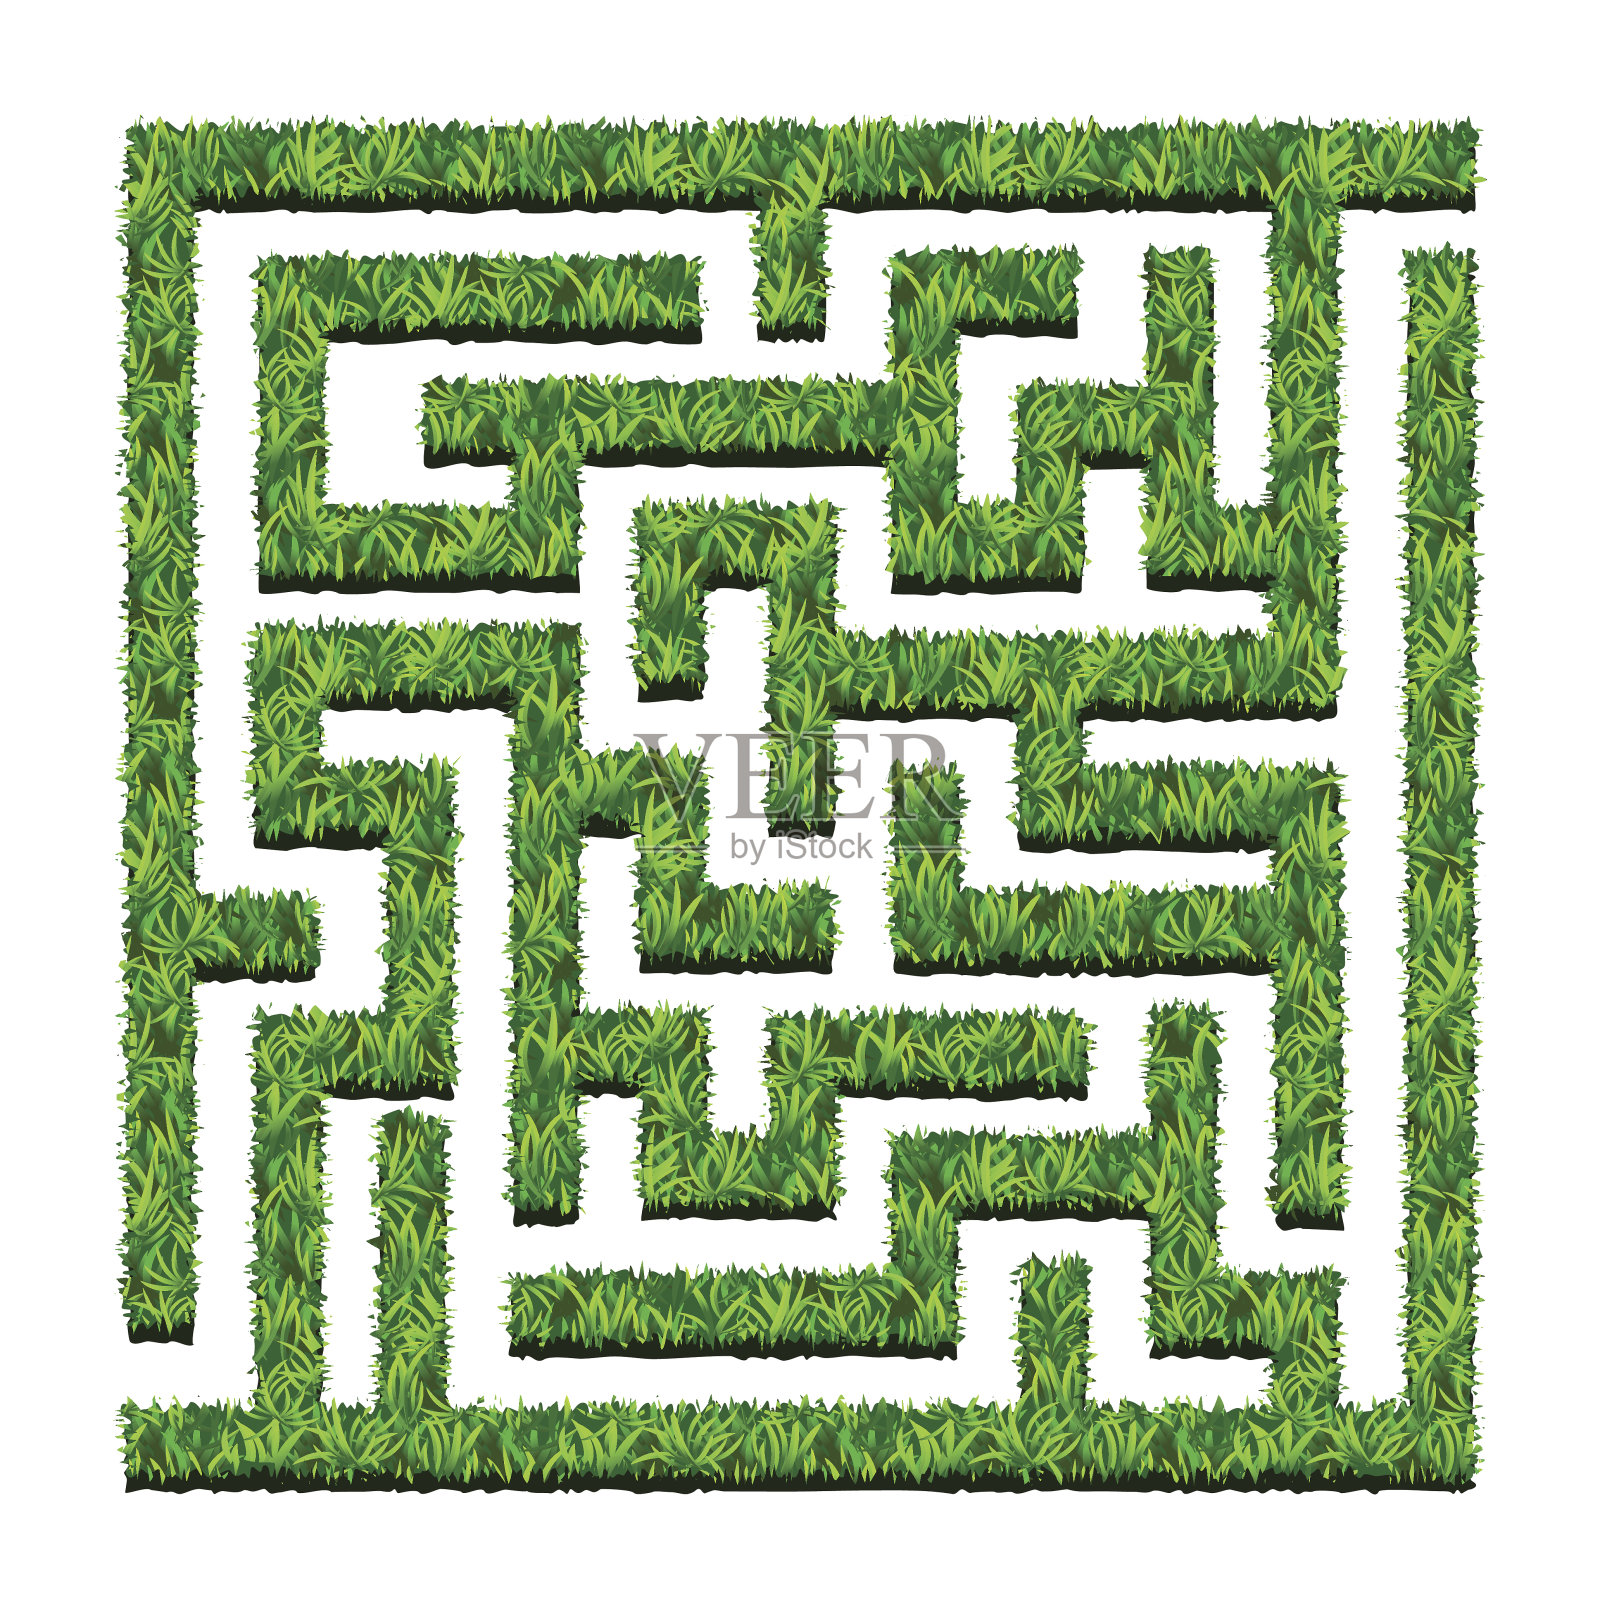 迷宫般的绿色灌木丛，迷宫般的花园。矢量插图。孤立的设计元素图片